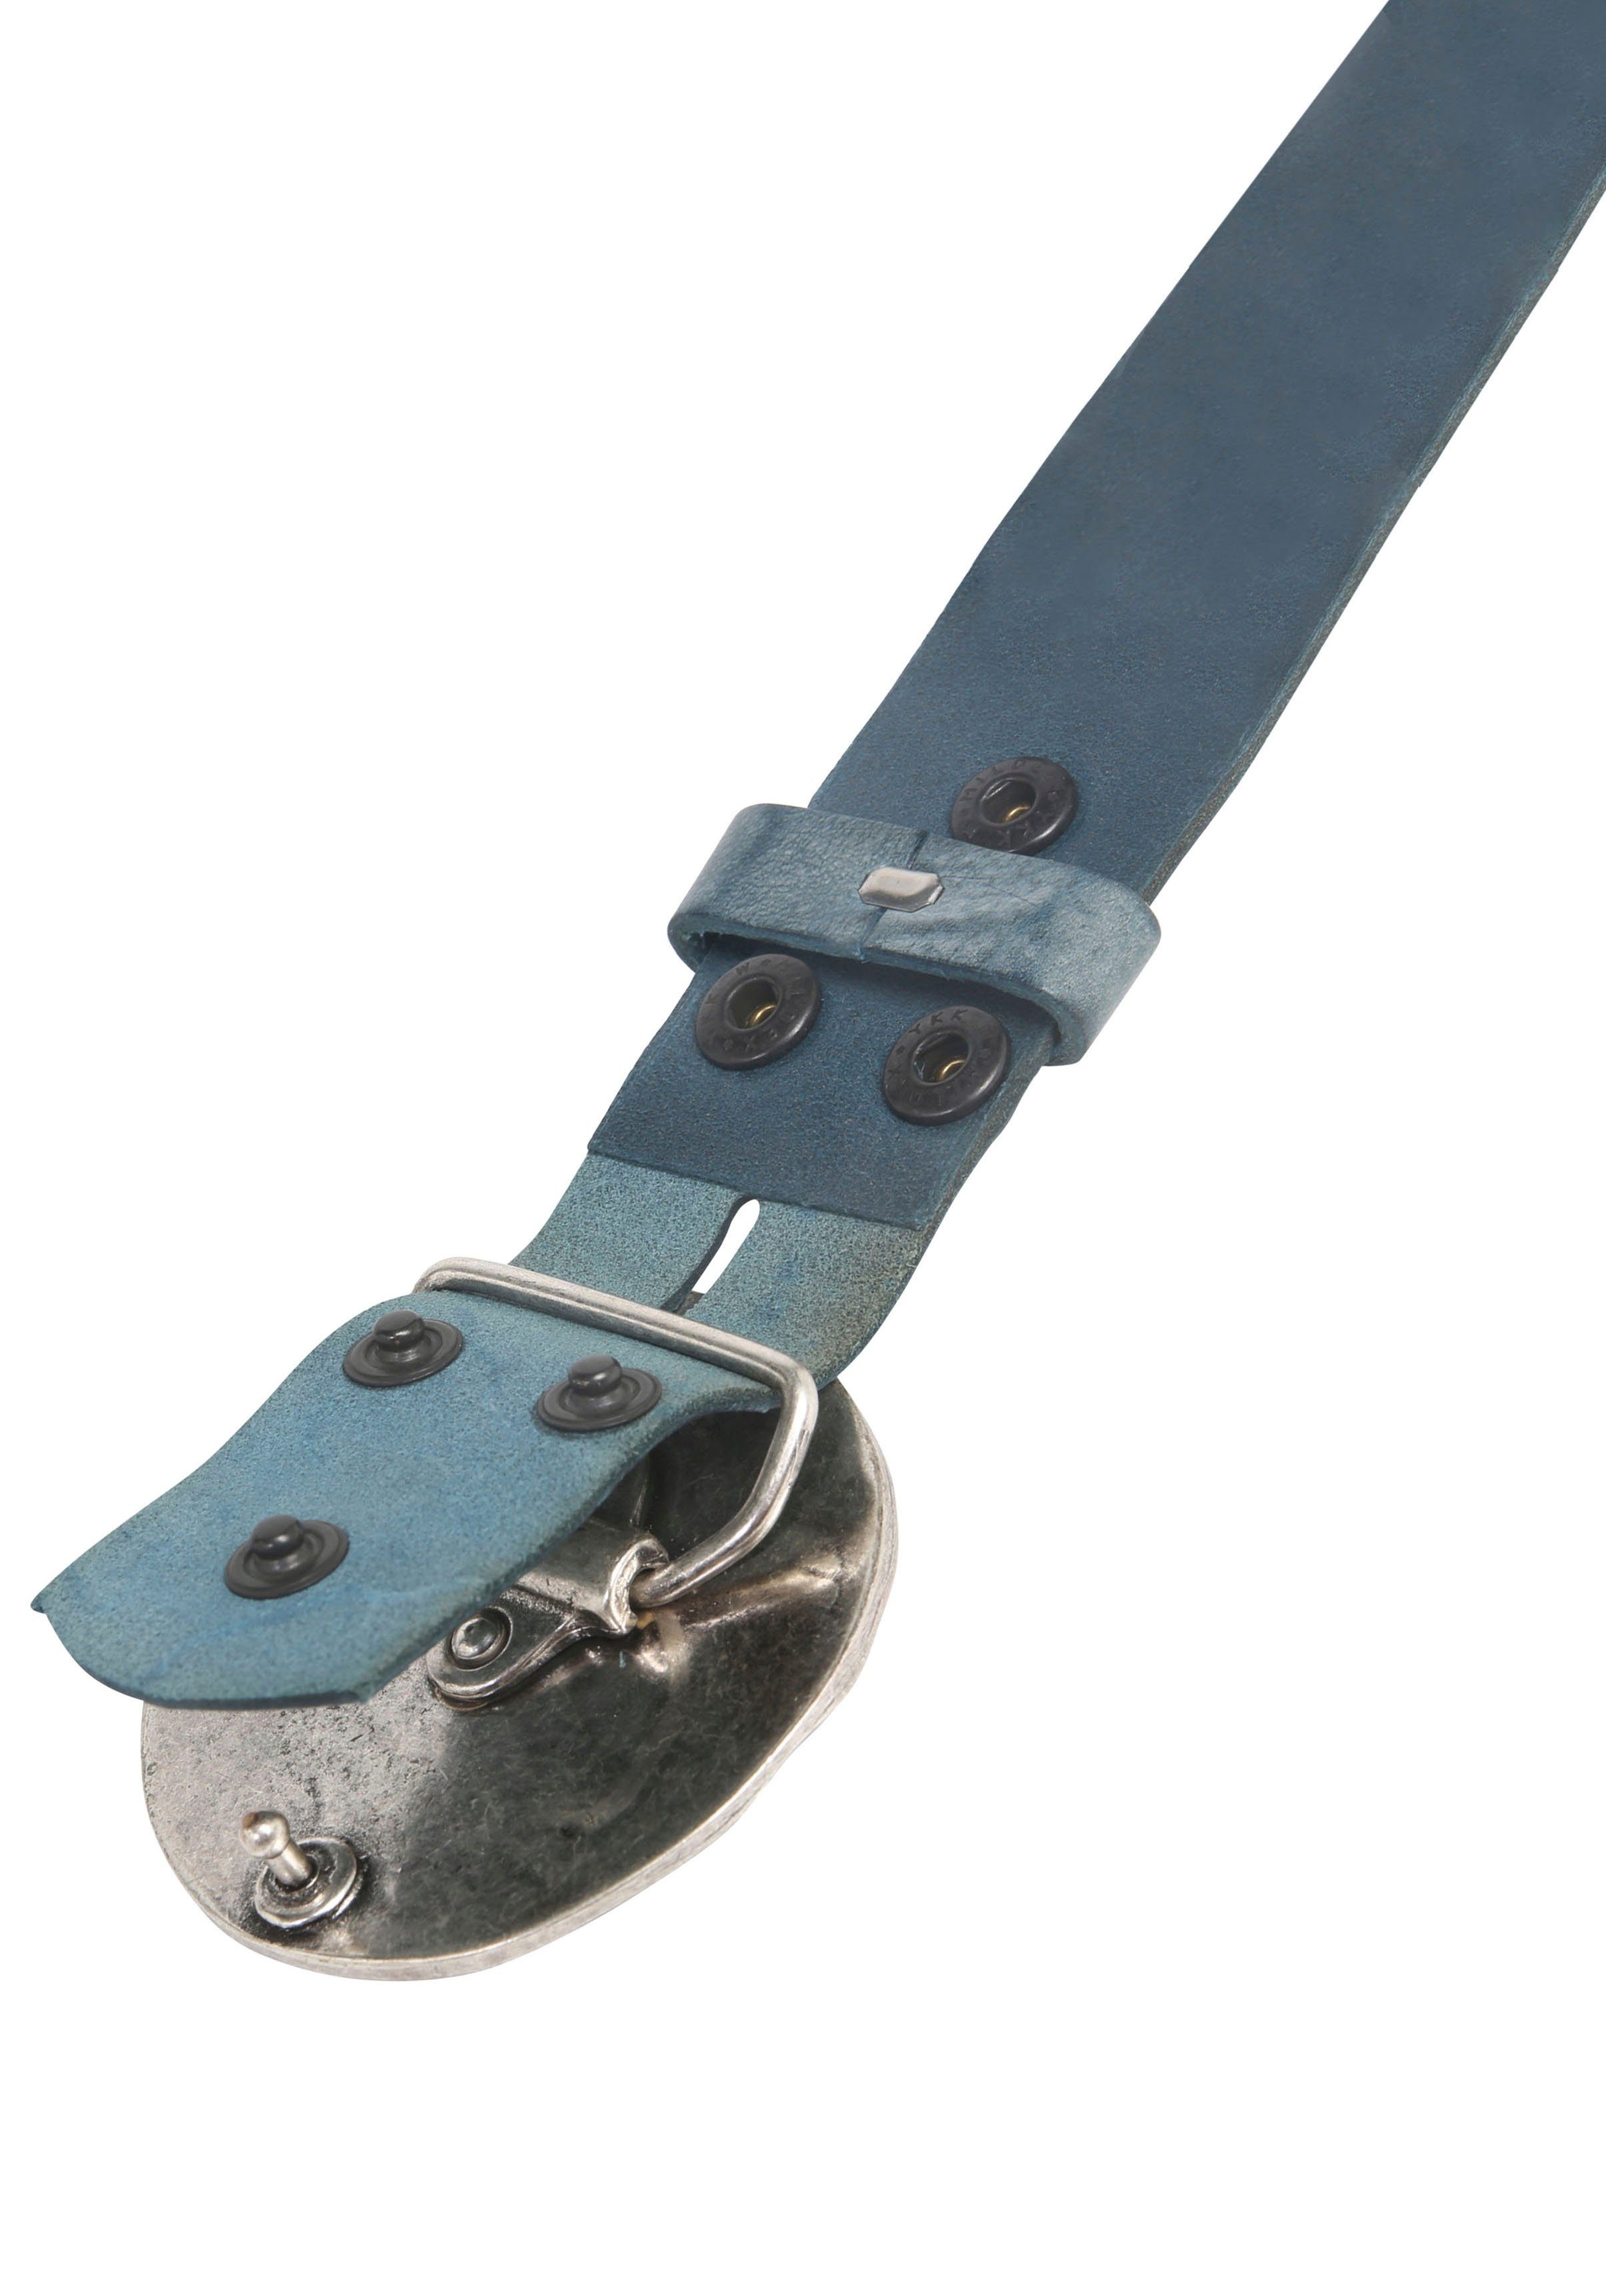 019° »Vollmond showroom Ledergürtel by Jeansblau«, austauschbarer RETTUNGSRING mit Silber« »Gump Schließe